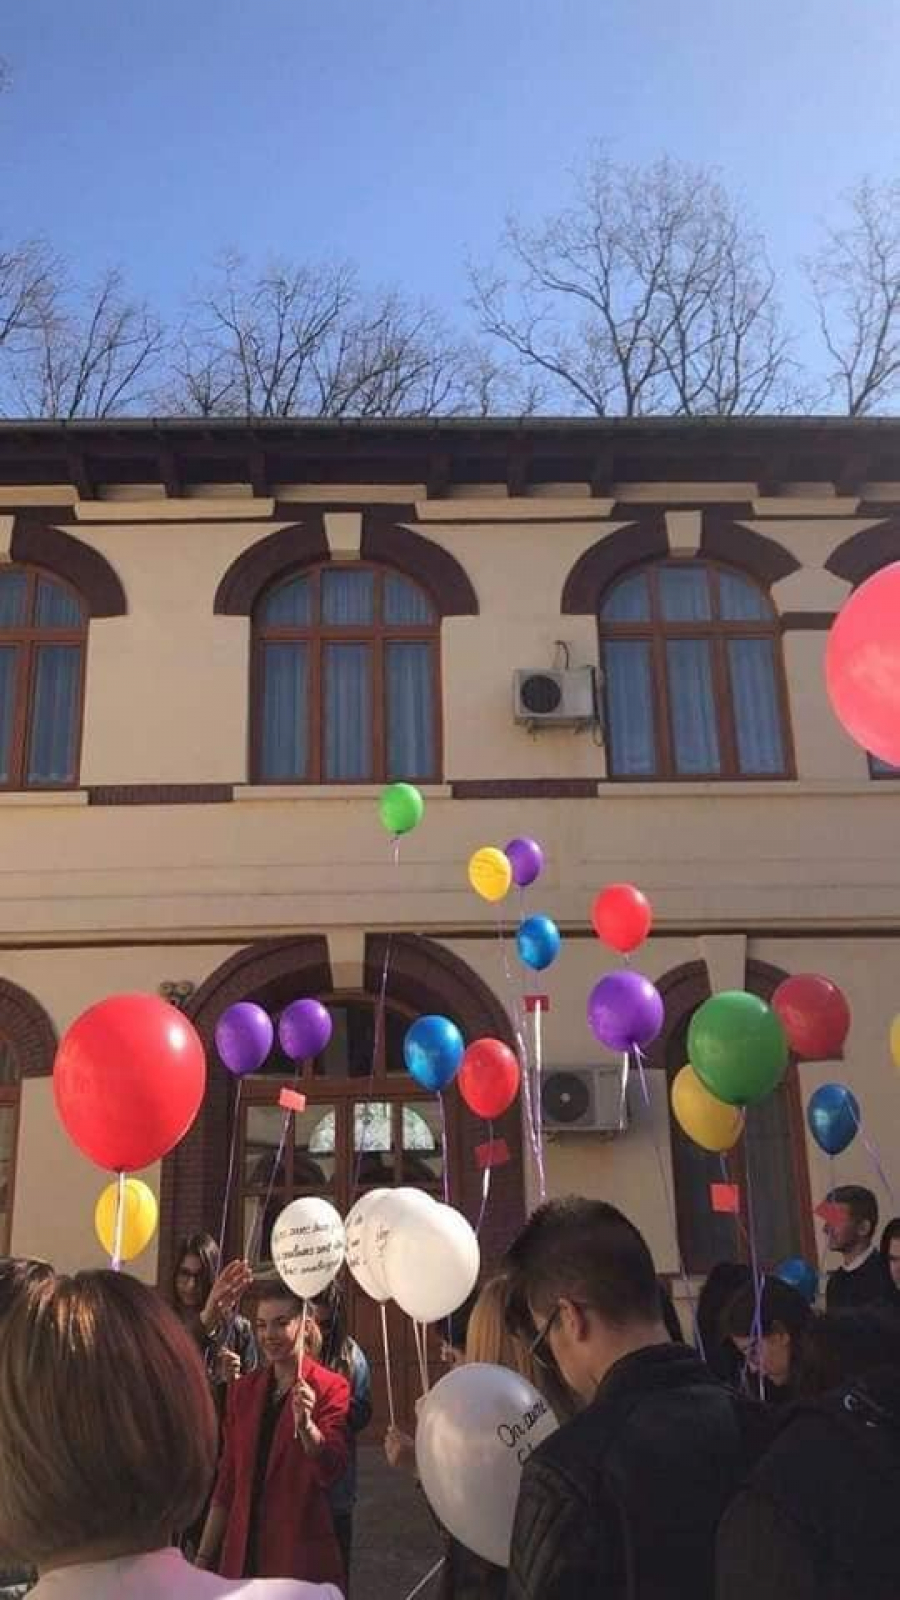 Poezii în limba franceză lansate cu baloane colorate